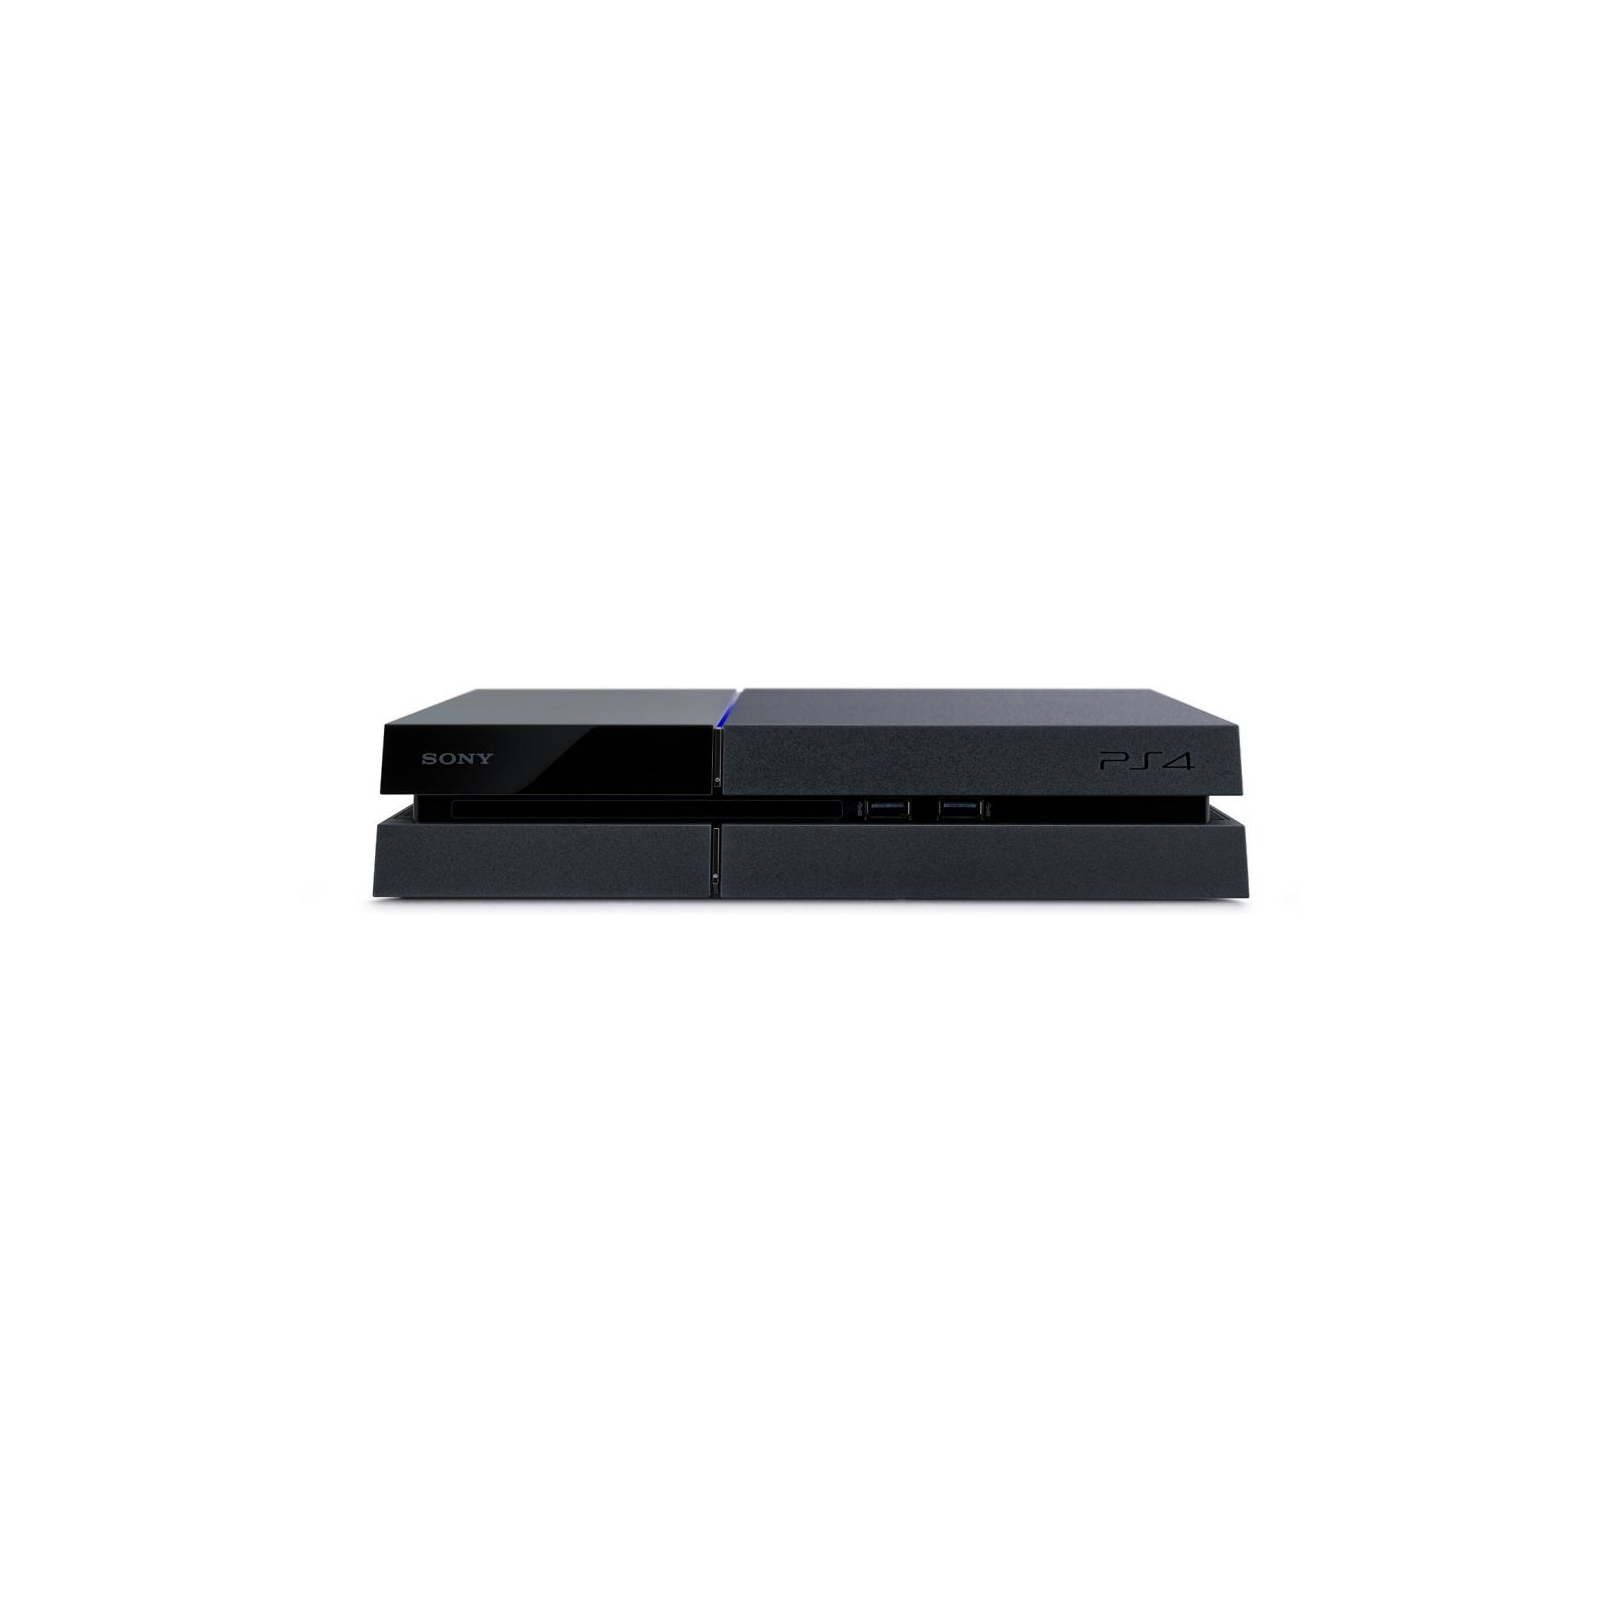 Игровая консоль Sony PlayStation 4 1TB (200619) изображение 3